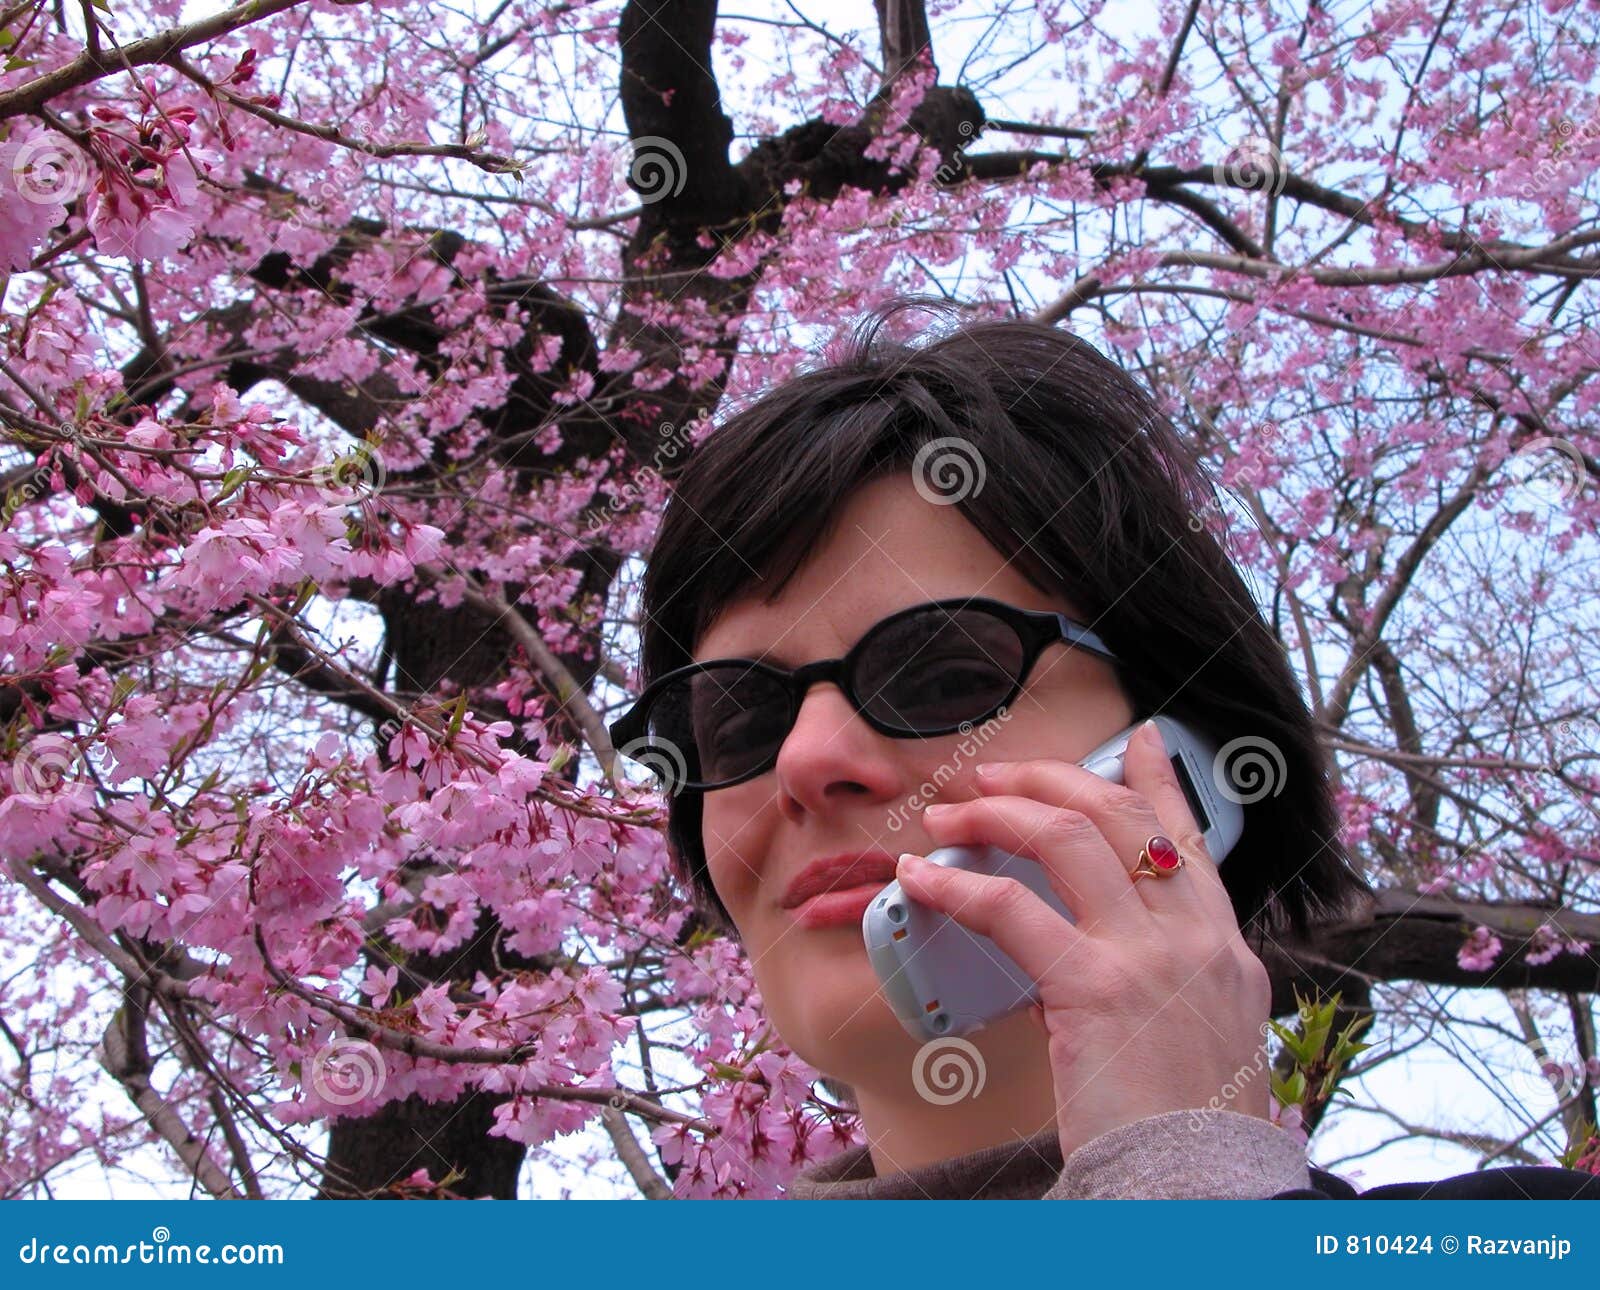 Nuova stagione di comunicazione. Donna sorridente con gli occhiali da sole ed il telefono mobile nell'ambito di una albero-metafora del fiore di ciliegia per la comunicazione fresca